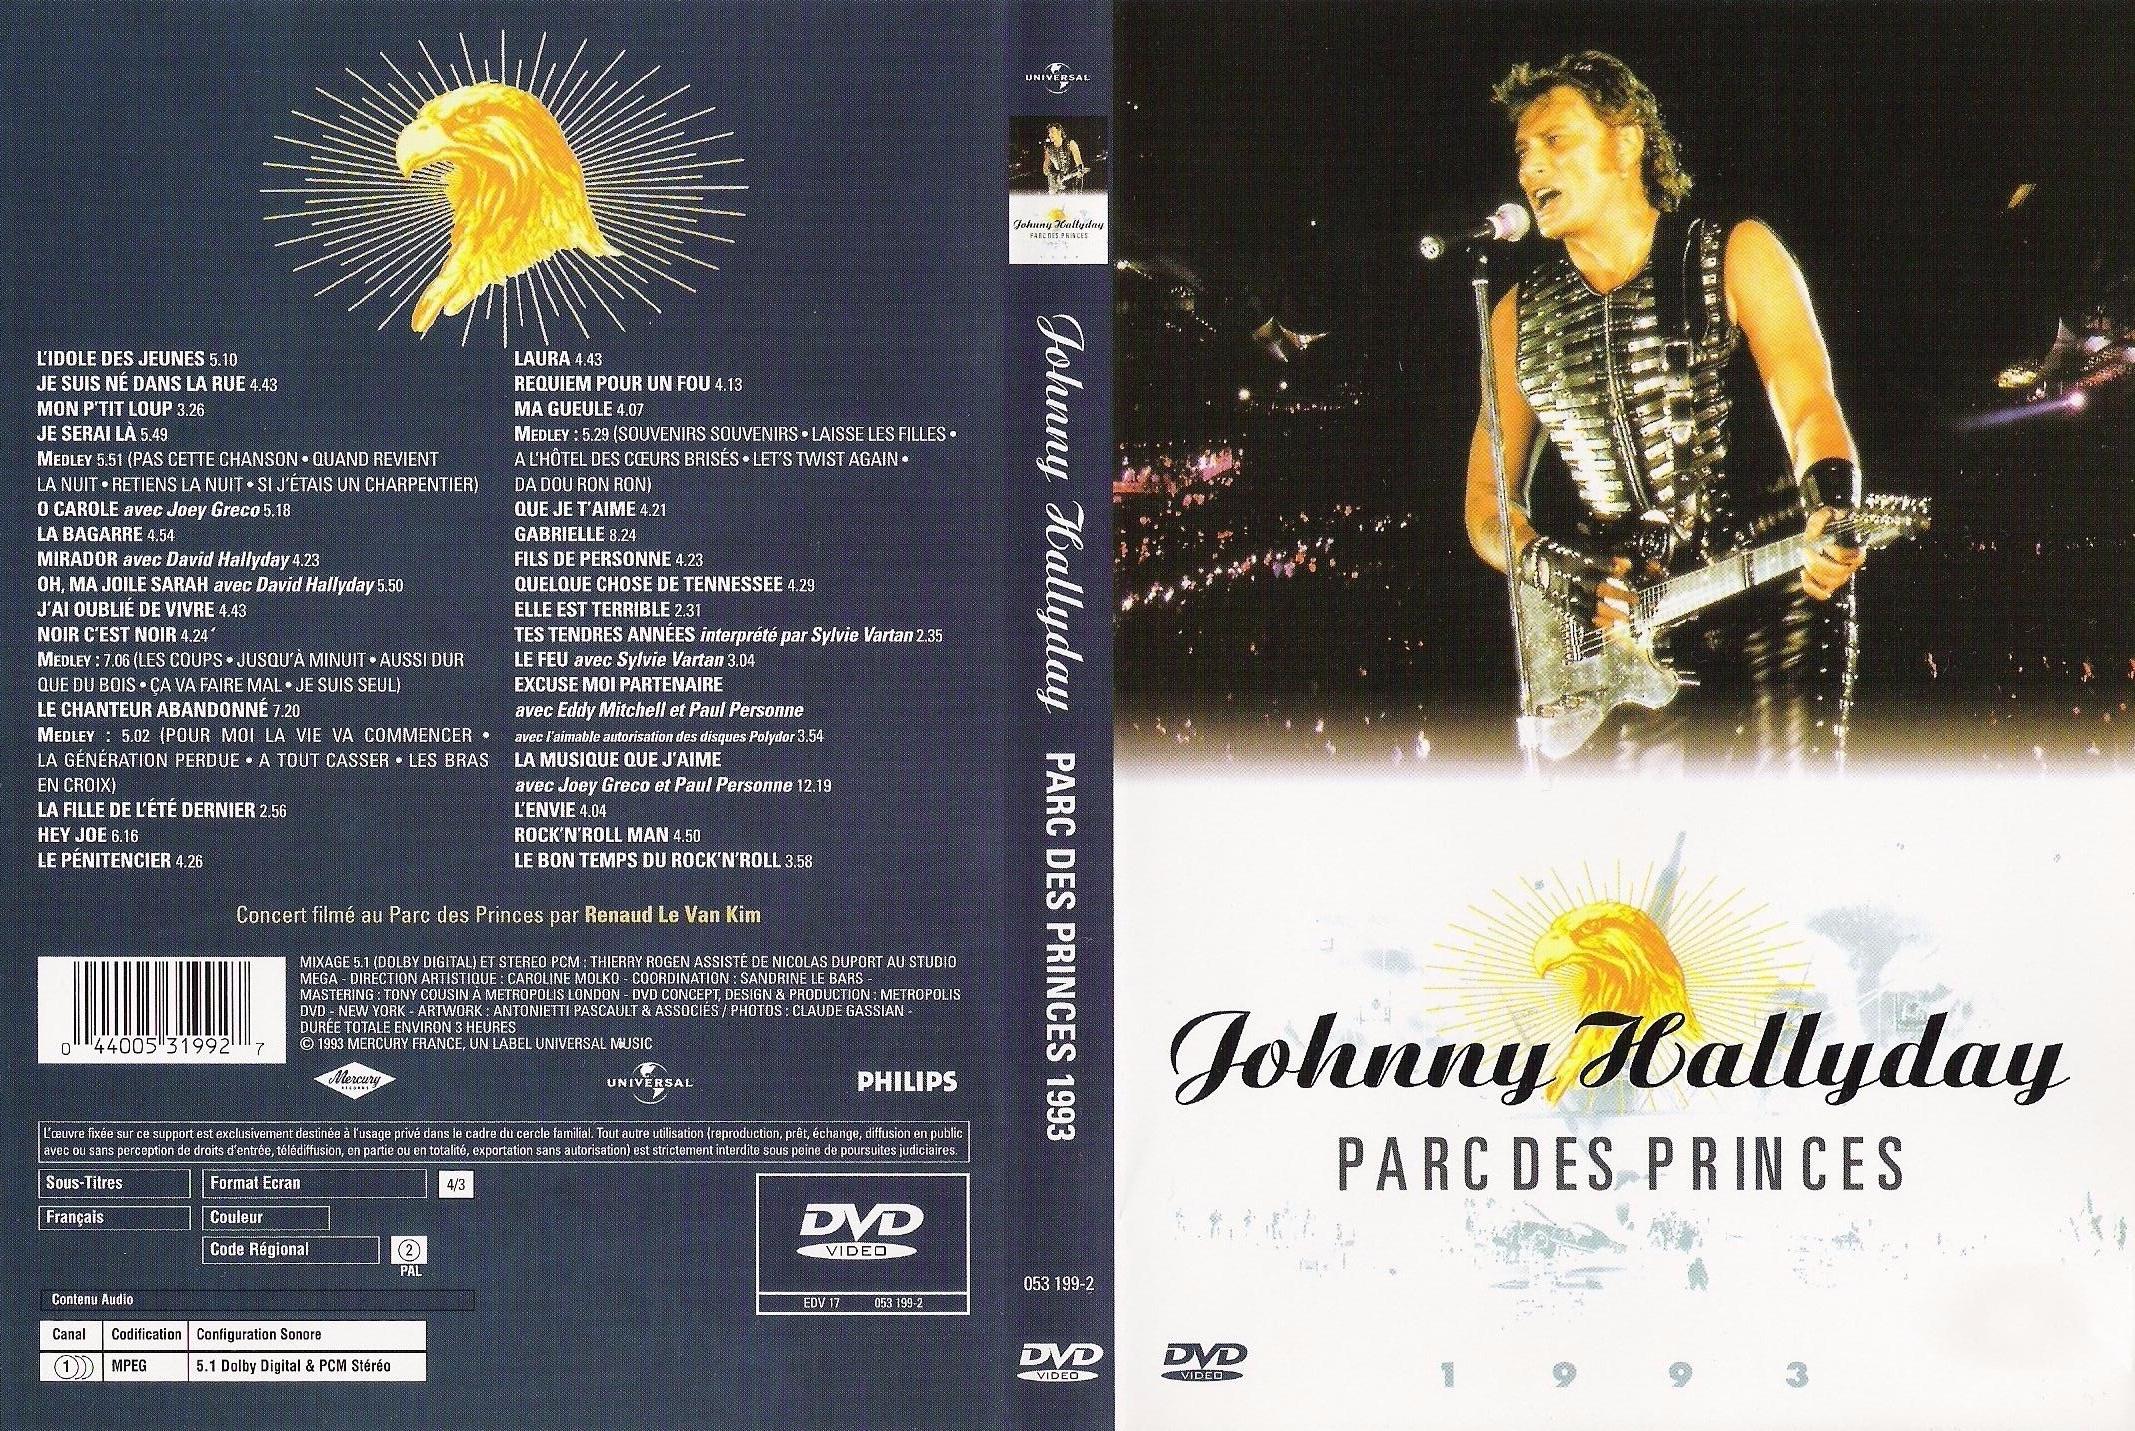 Jaquette DVD Johnny Hallyday Parc des Princes 1993